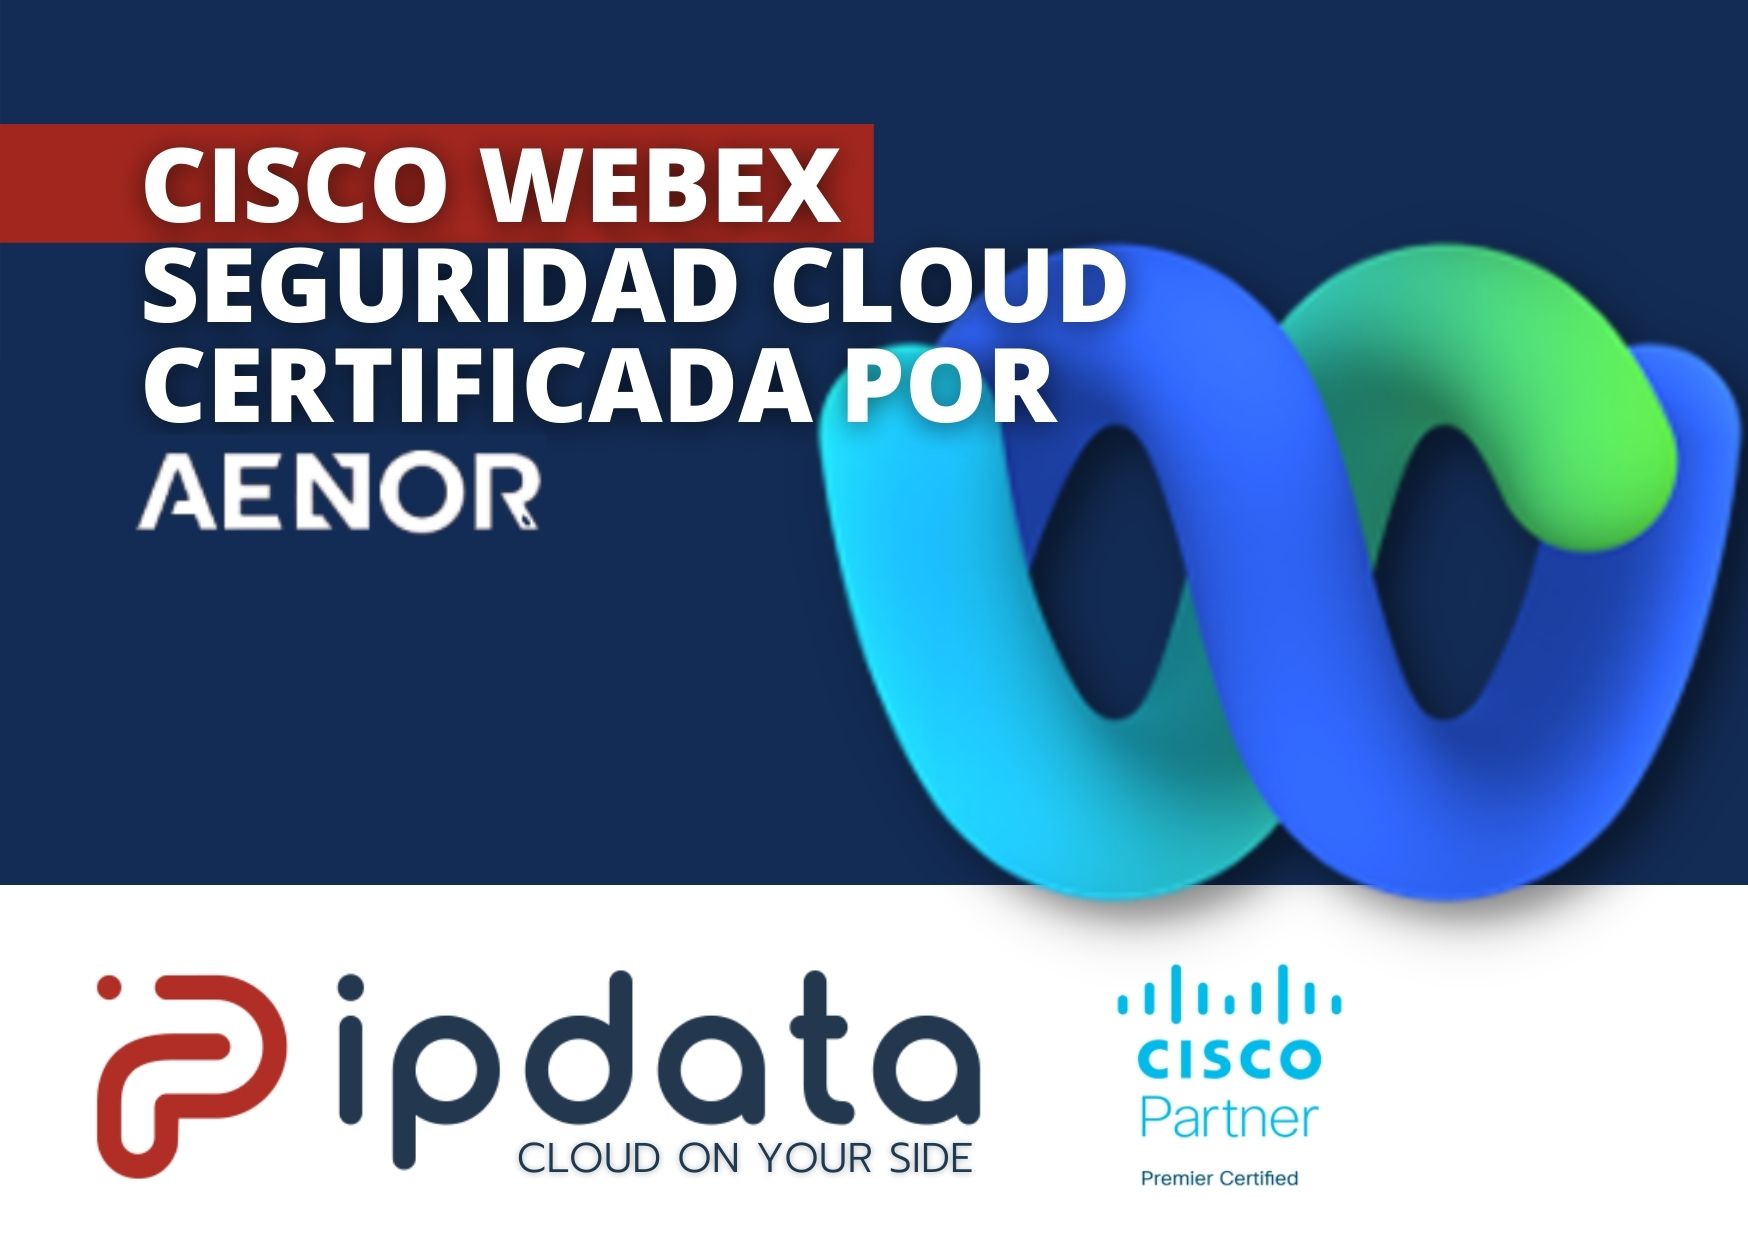 Cisco Webex Seguridad Cloud recibe certificado de AENOR